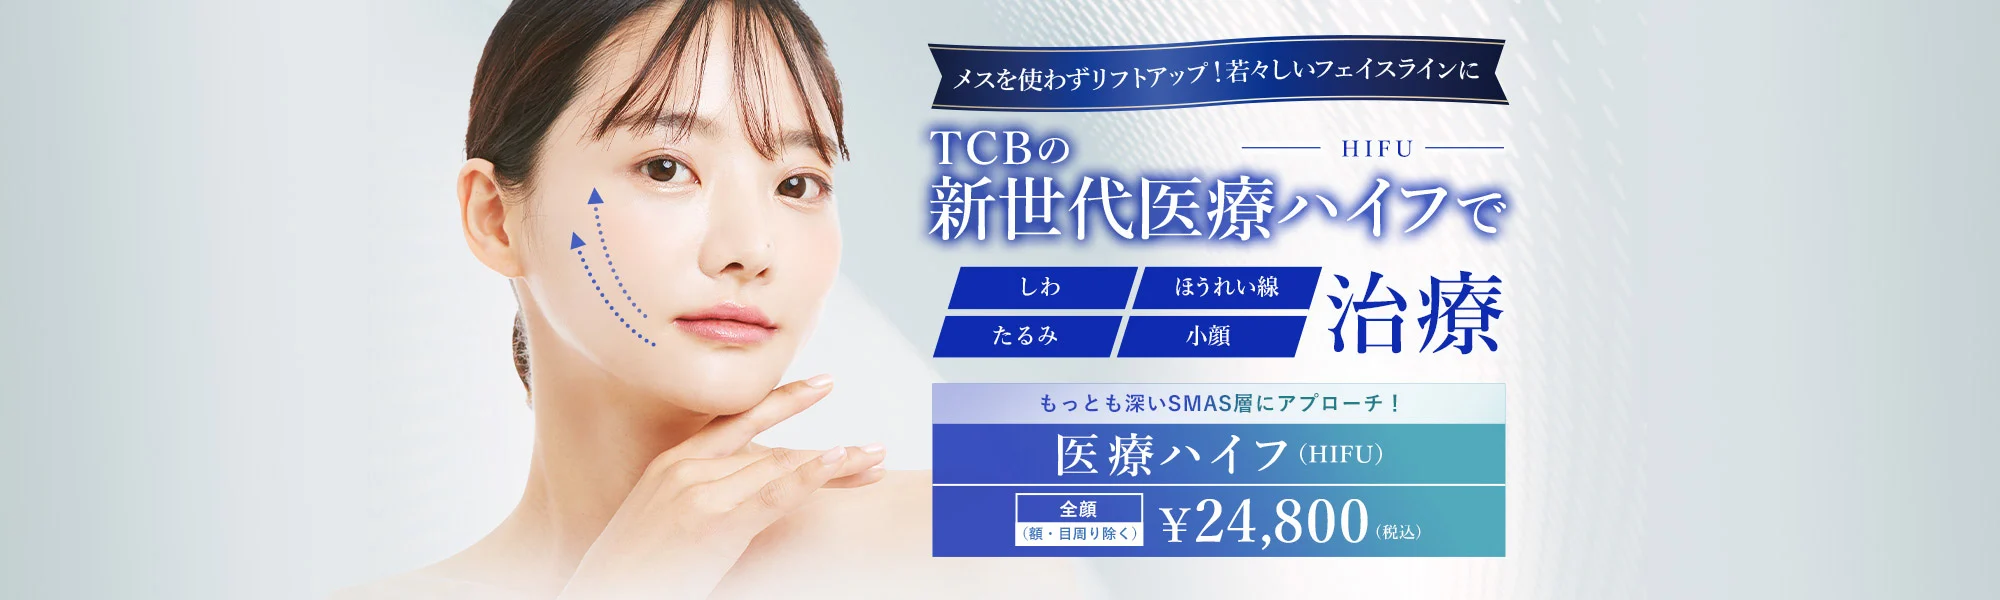 「東京中央美容外科 仙台院」は目元のたるみにもアプローチ